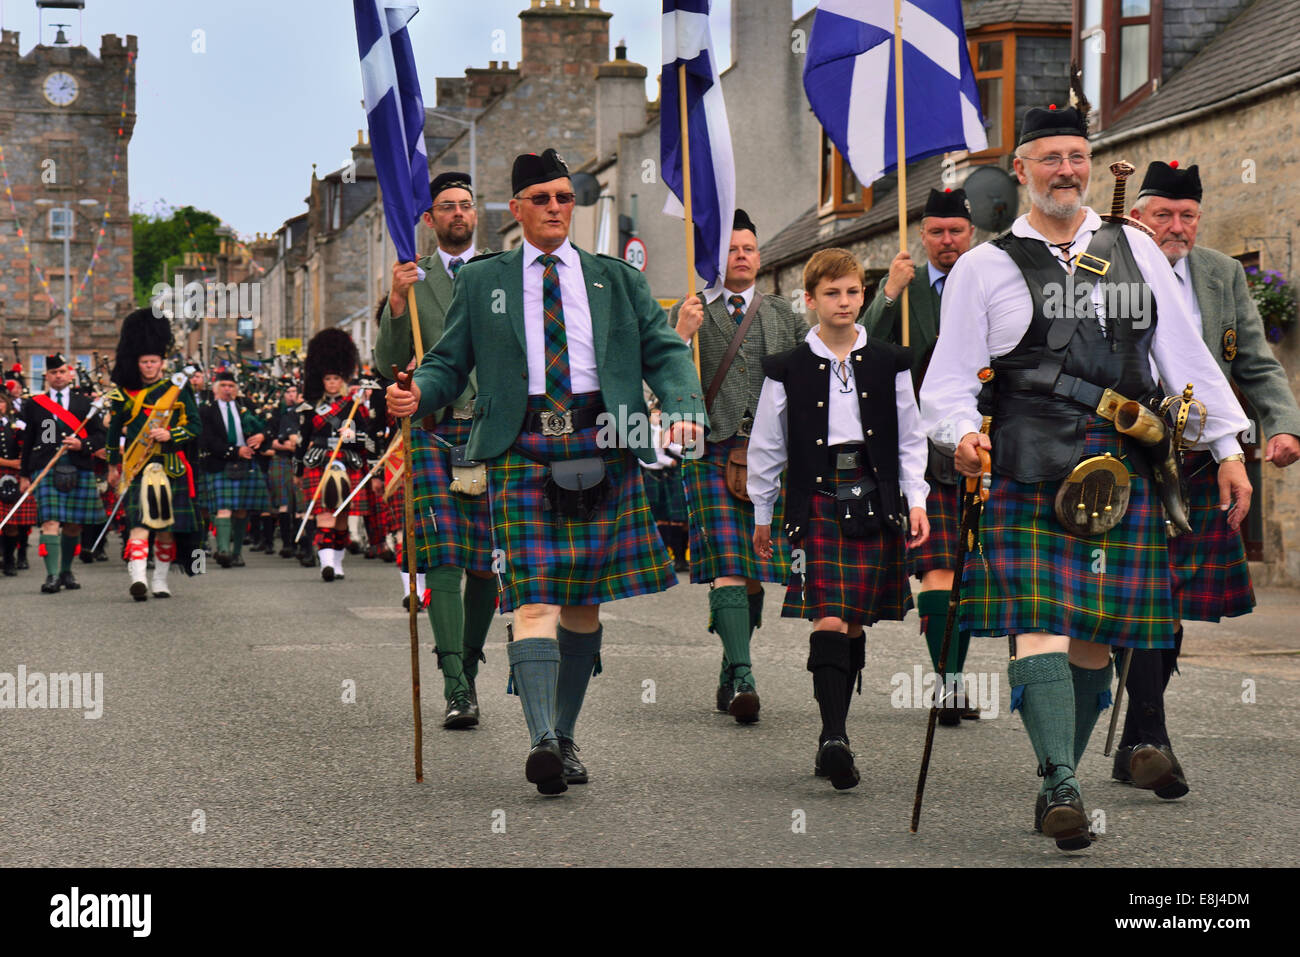 Los dignatarios de la ciudad conduce el desfile de las bandas de gaitas, Dufftown, Moray, Highlands, Scotland, Reino Unido Foto de stock